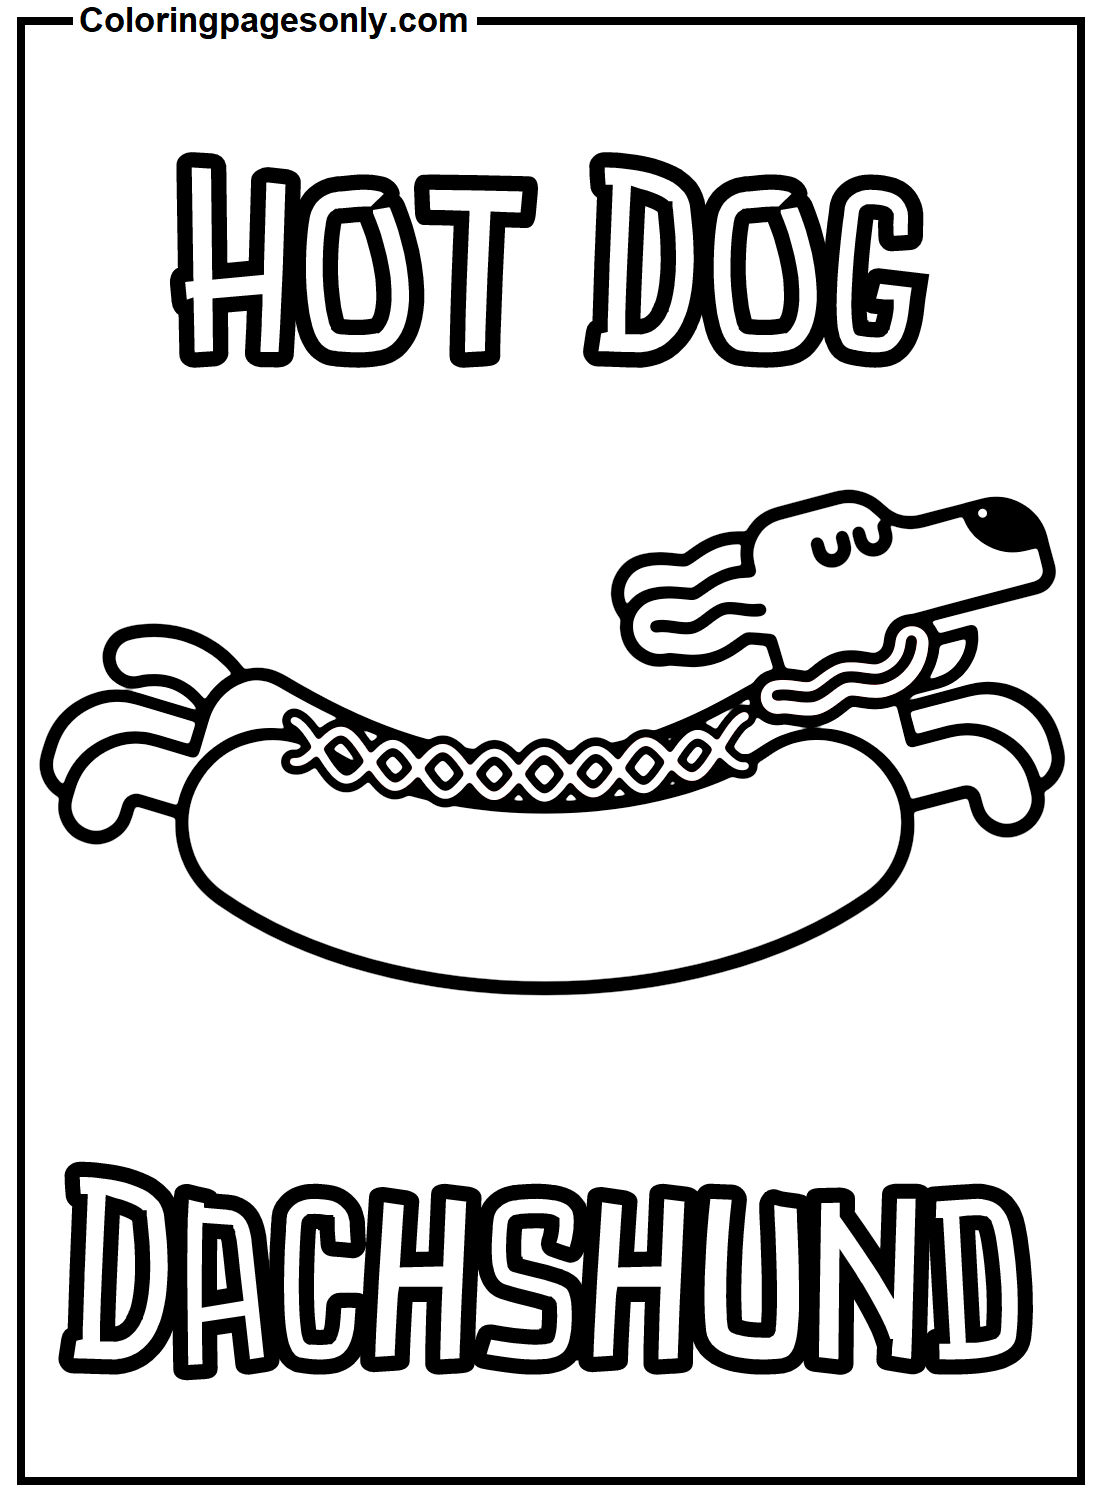 Bassotto Hot Dog di Hot Dog